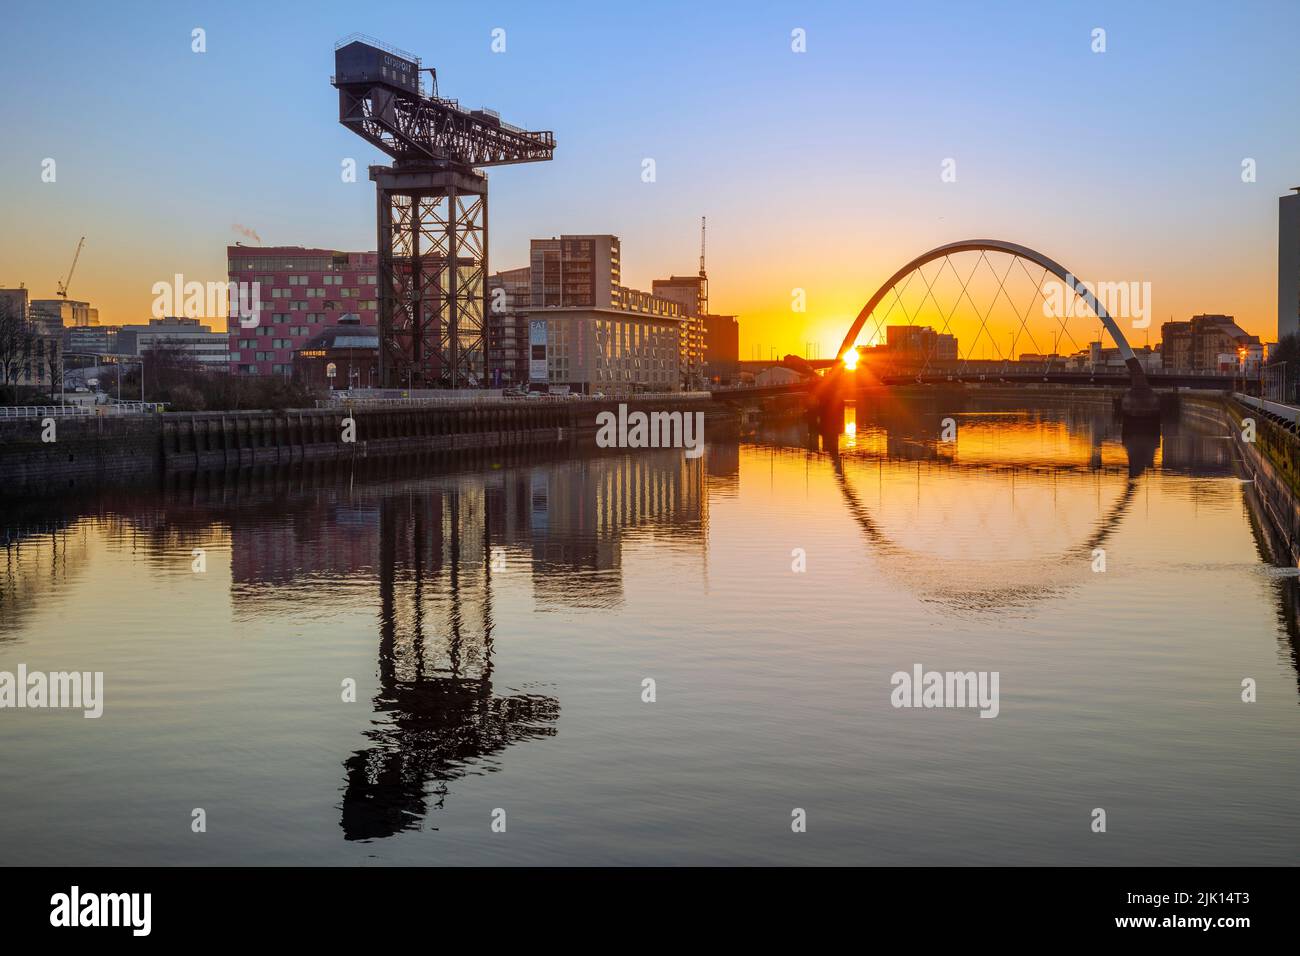 Lever du soleil sur la rivière Clyde, Crane de Finnieston, Clyde Arc (pont Squinty), rivière Clyde, Glasgow, Écosse, Royaume-Uni, Europe Banque D'Images